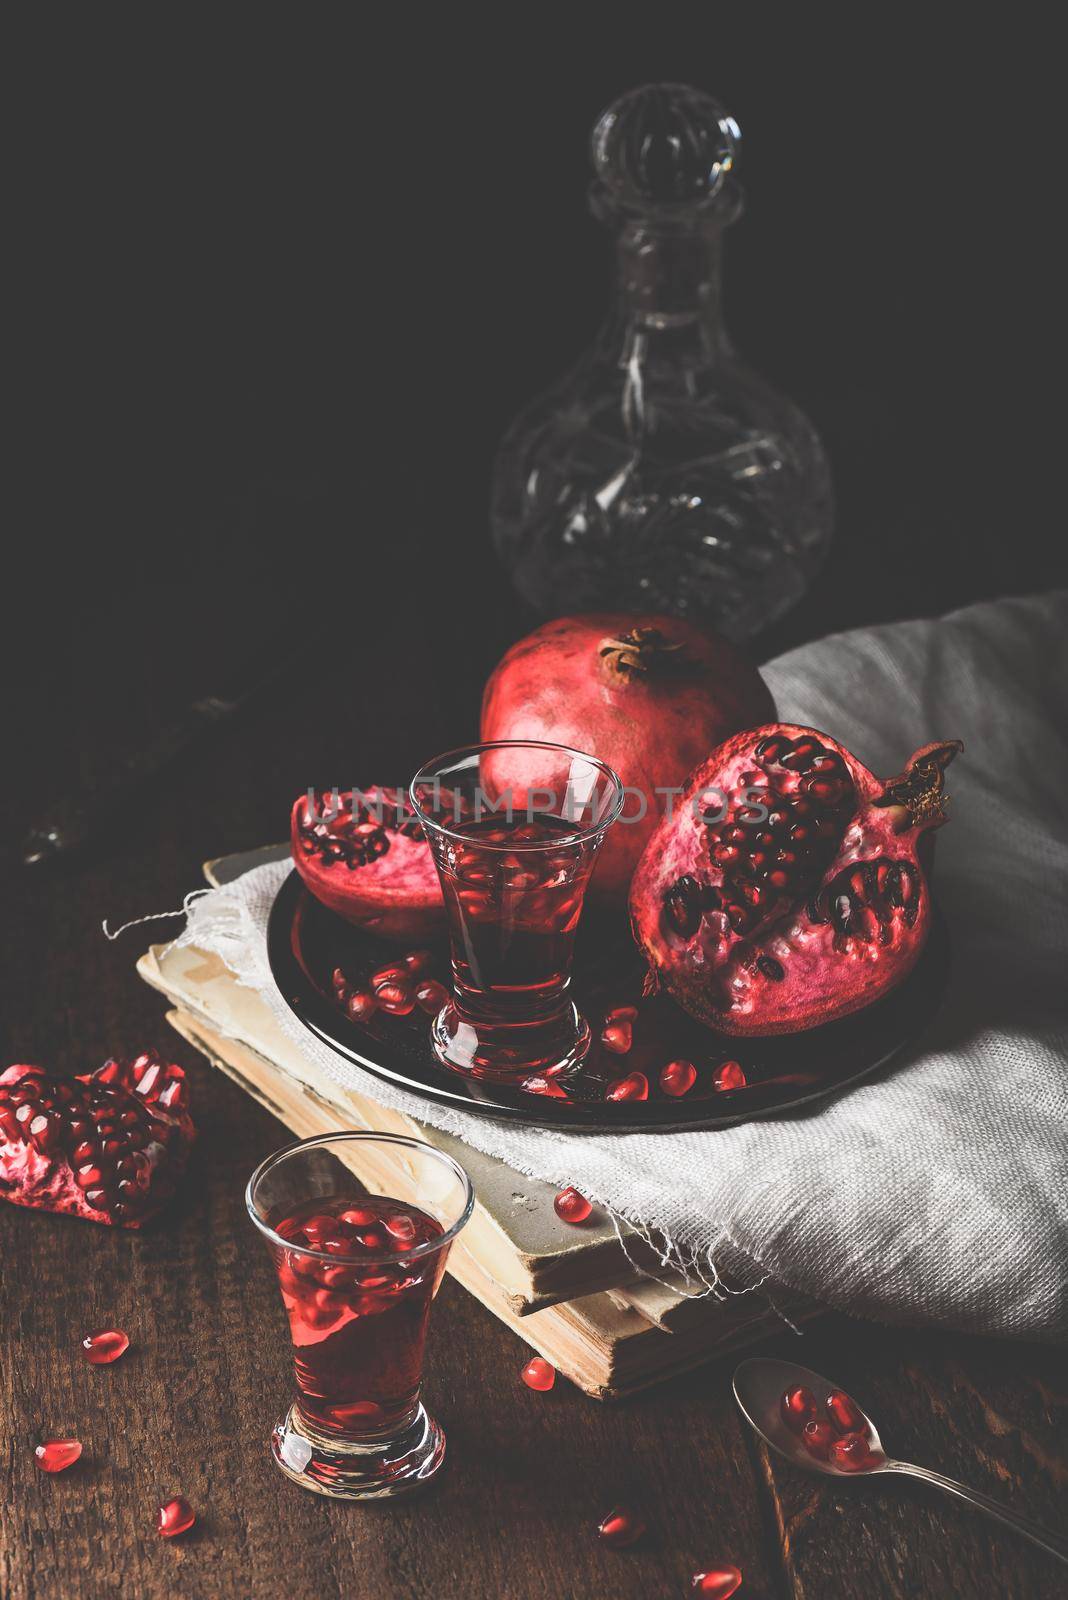 Shots of pomegranate liqueur by Seva_blsv